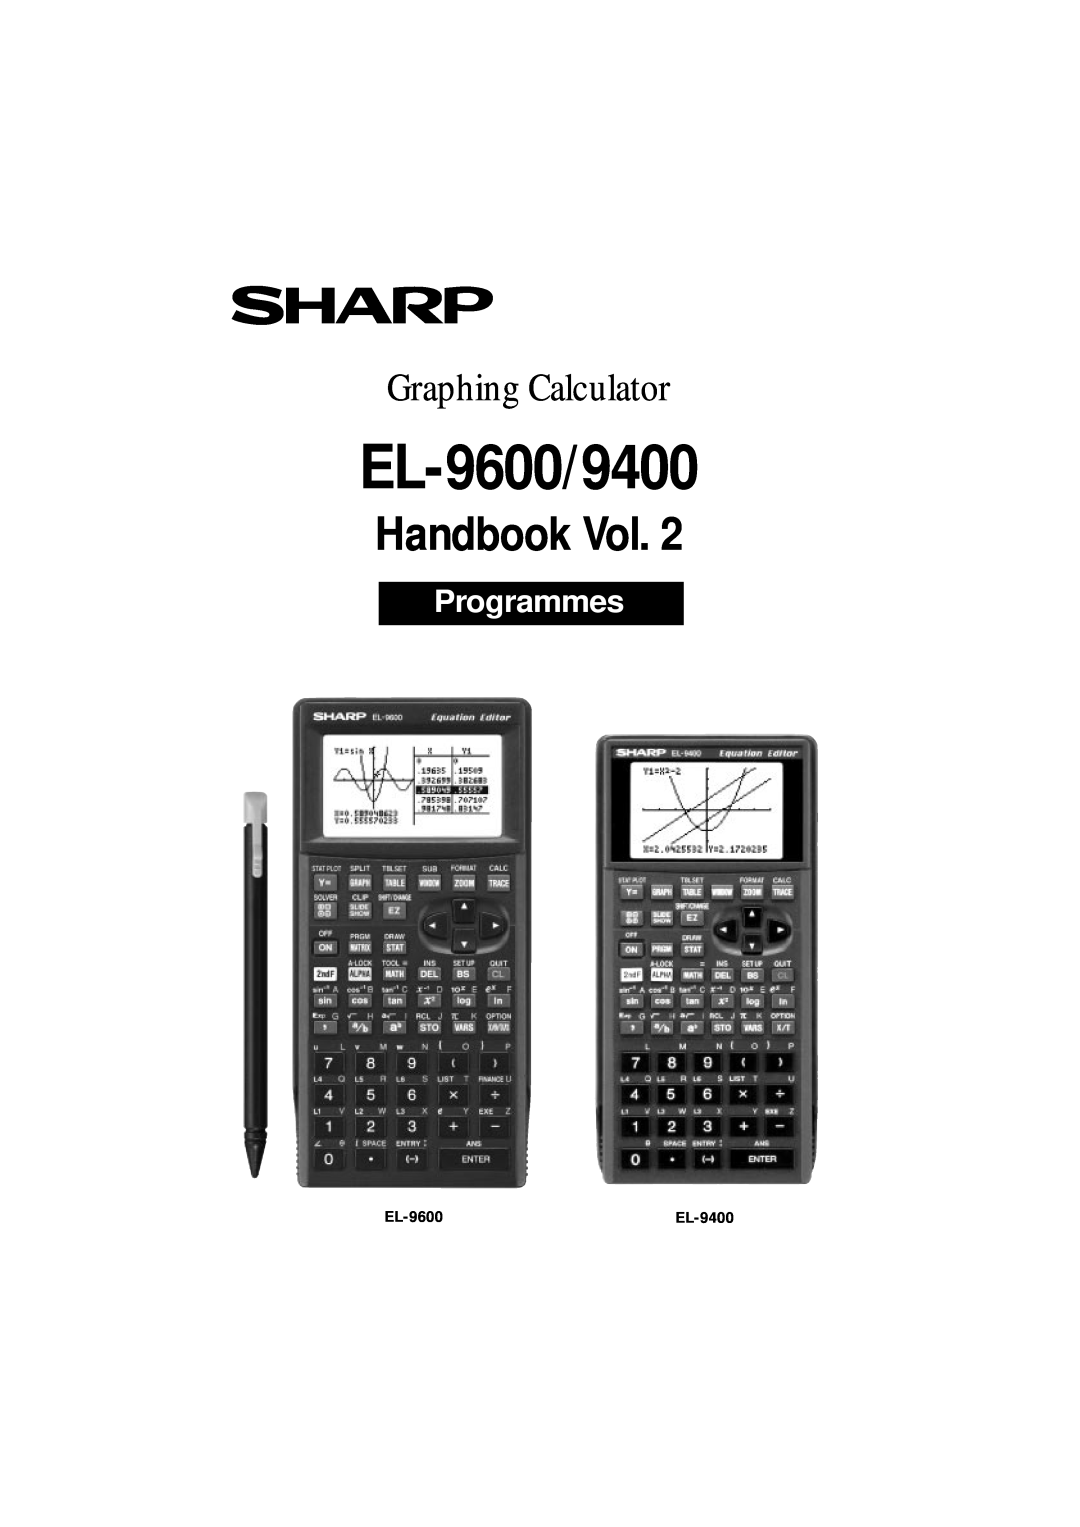 Sharp EL-9600c, EL-9400 manual EL-9650/9600c/9450/9400, Handbook Vol, Graphing Calculator, Algebra, EL-9450 